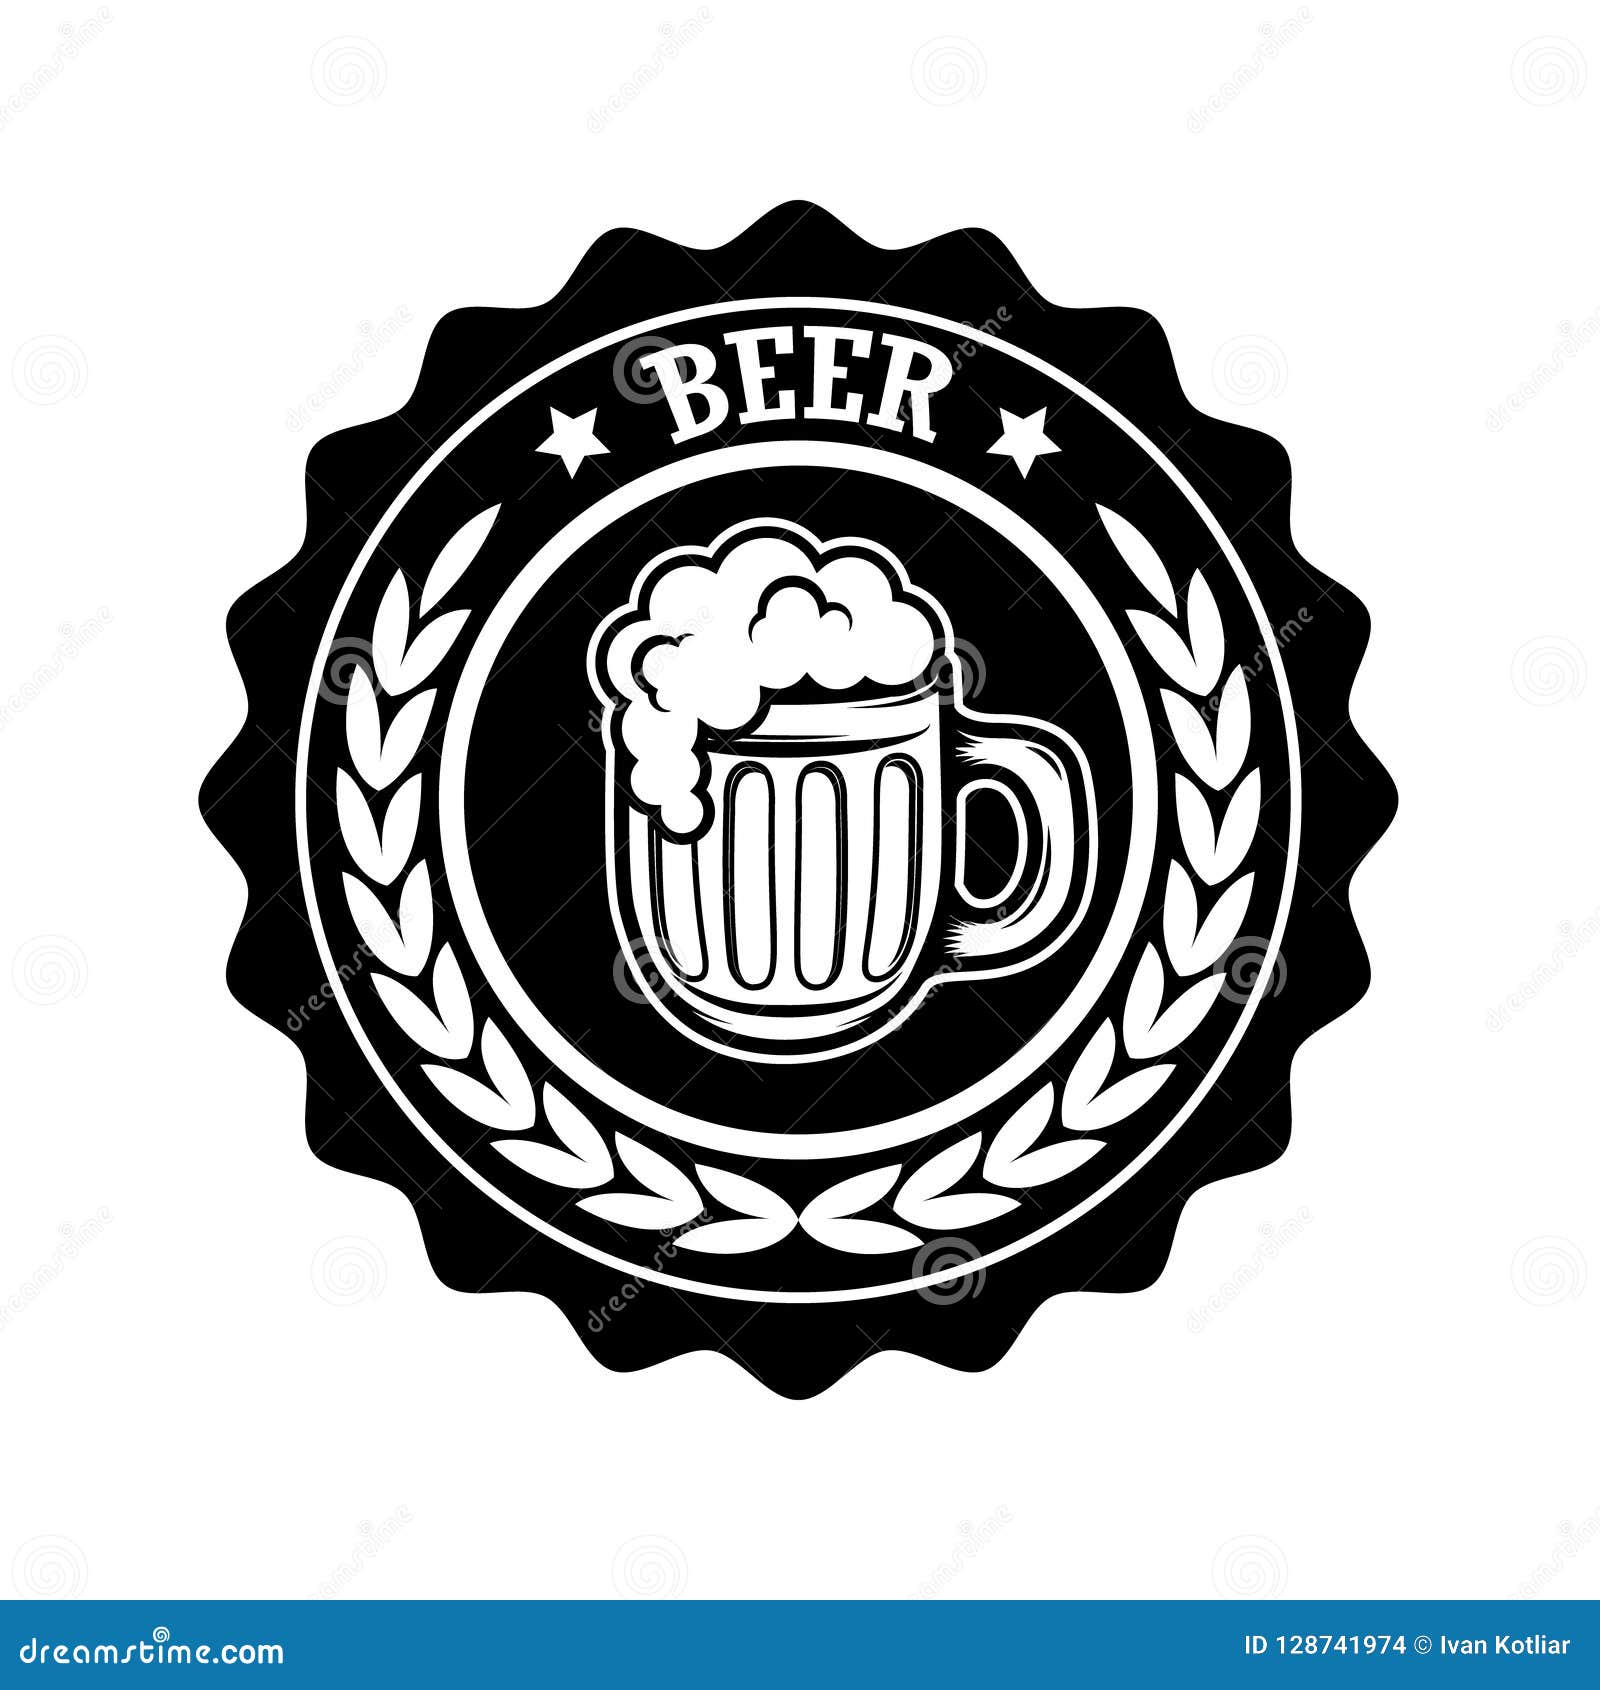 Vintage Beer Label. Design Elements for Logo, Label, Emblem, Sign, Menu ...